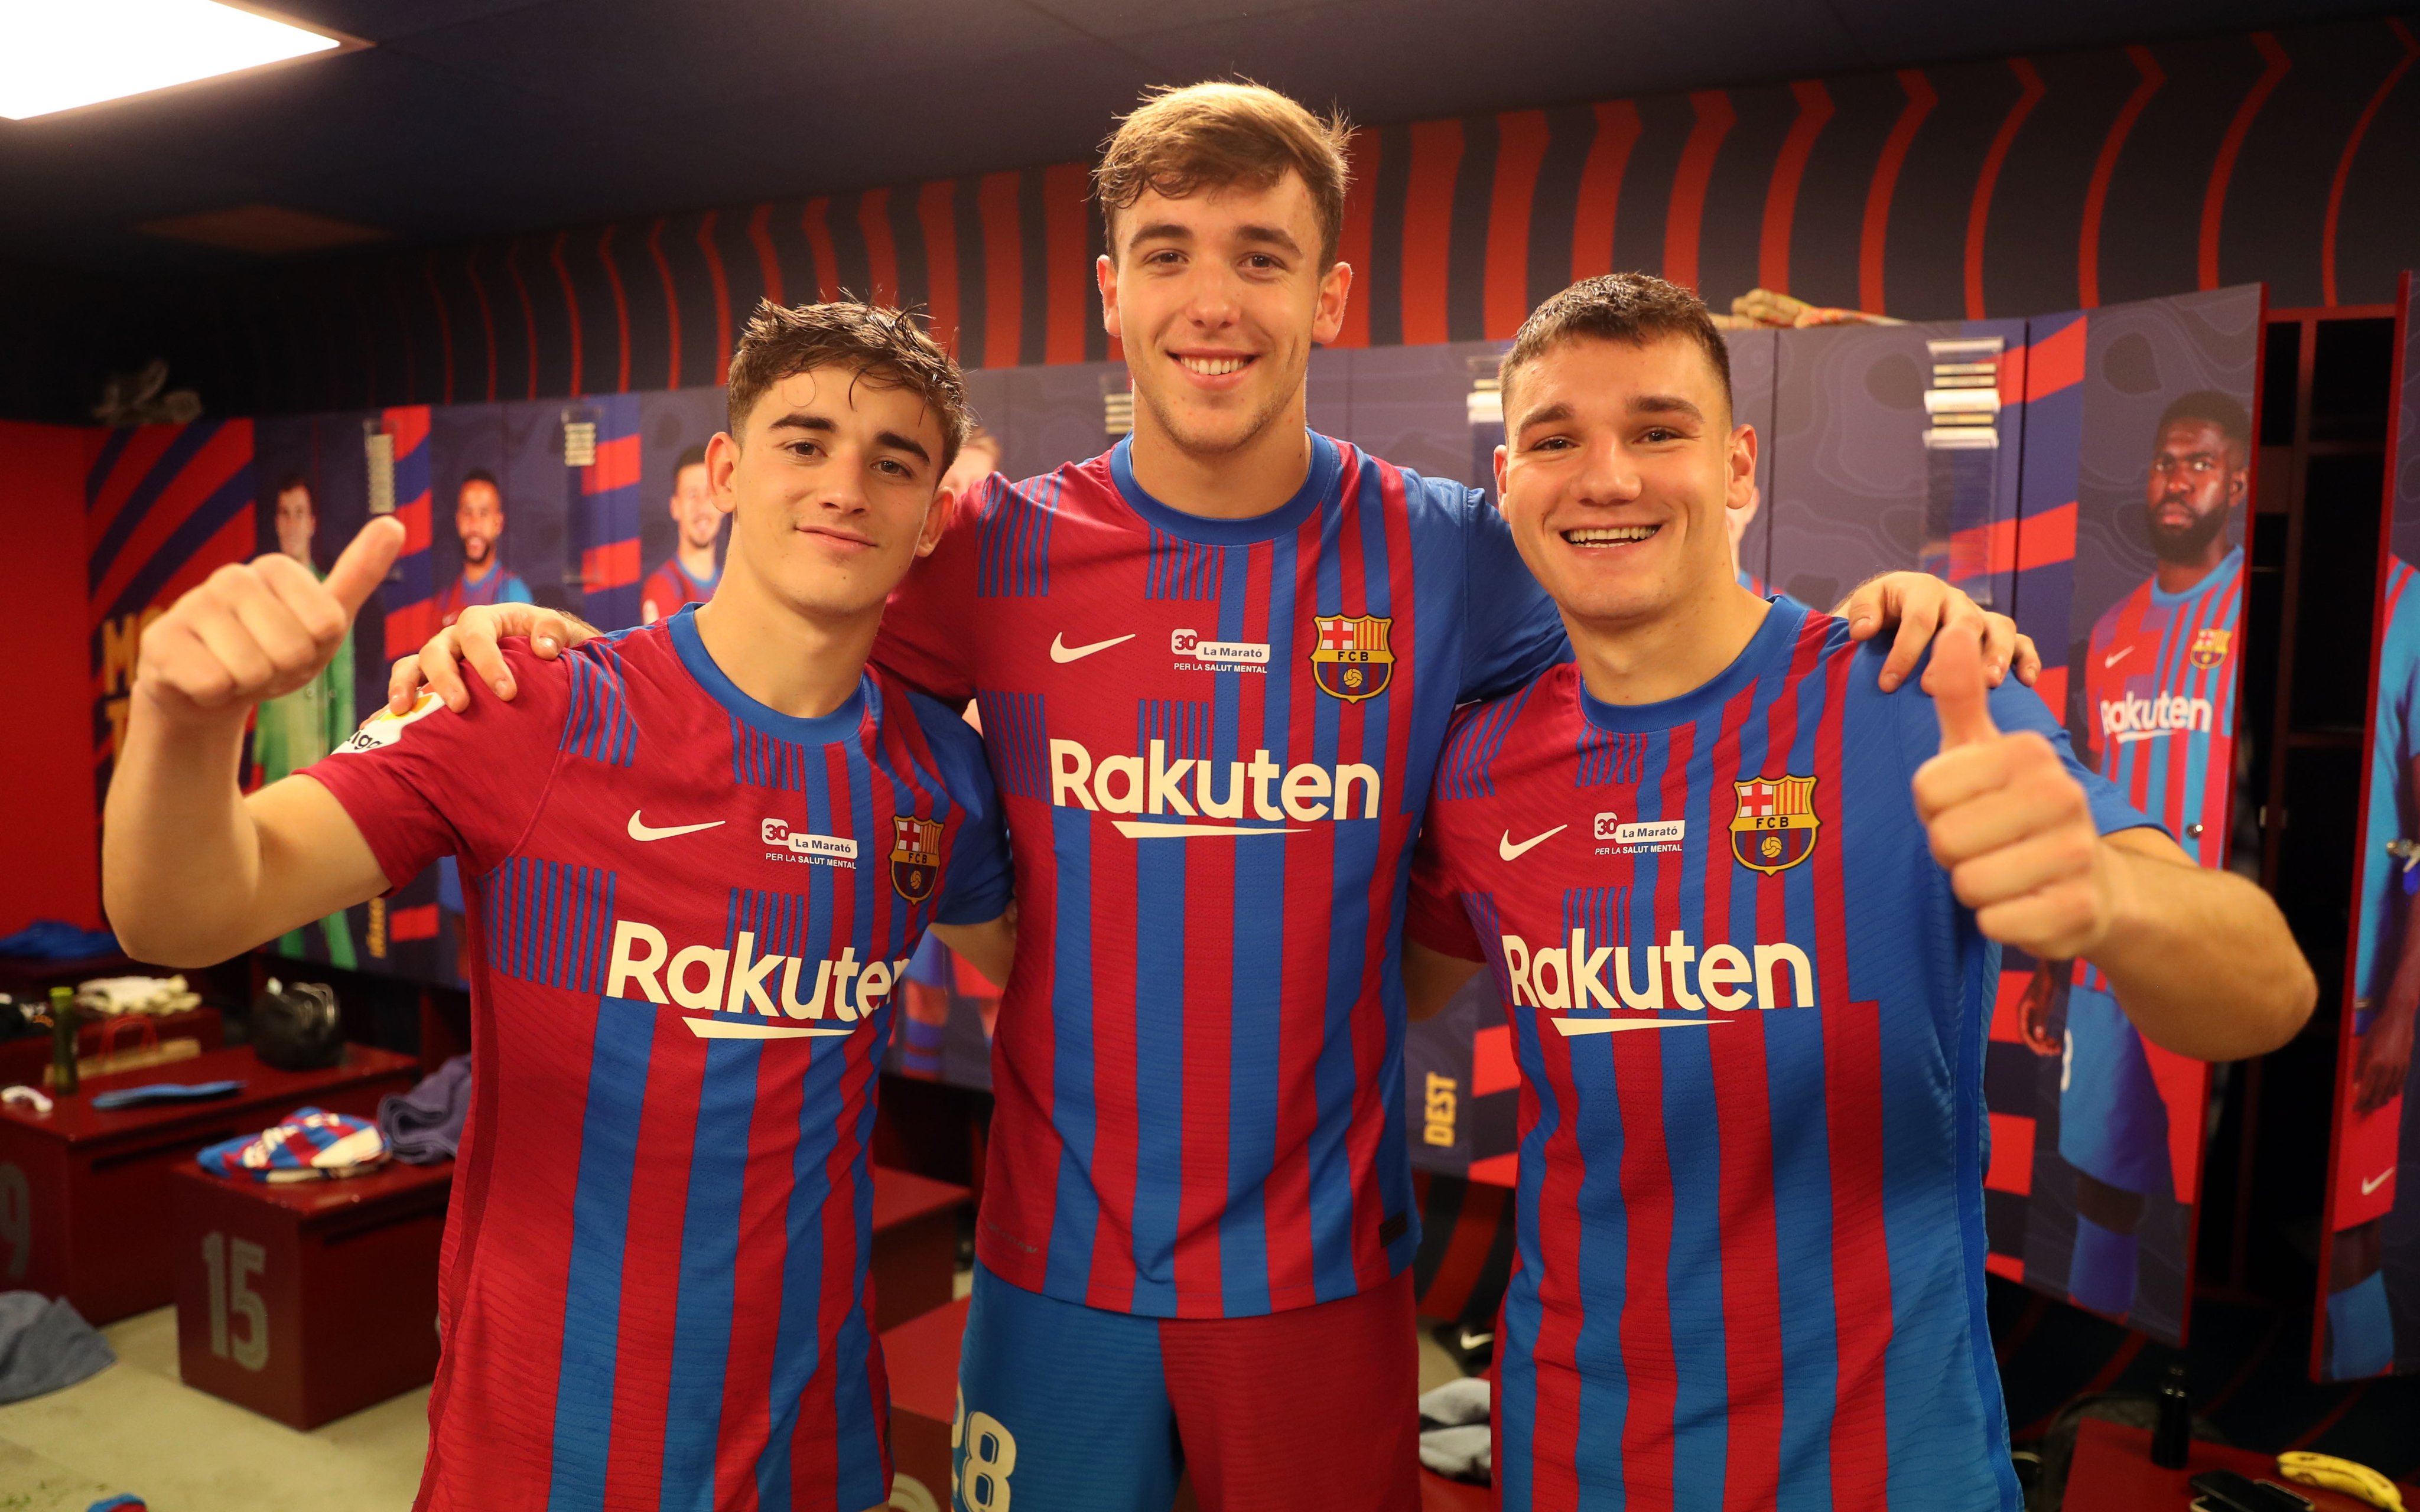 Jugadores jovenes del barcelona